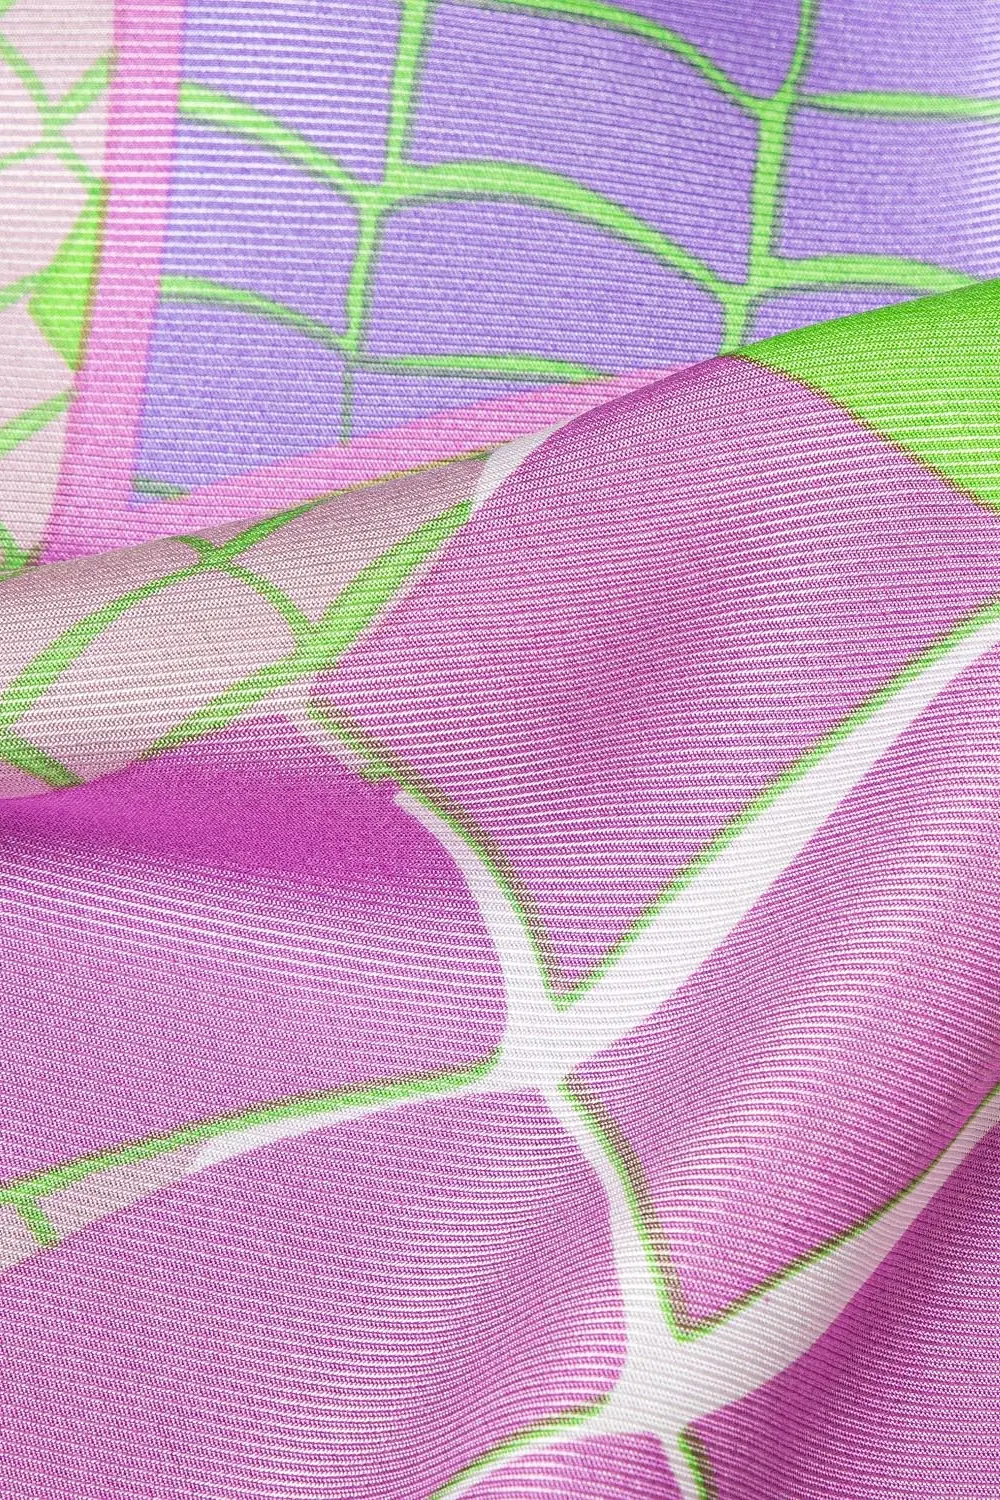 wiskoza 100% bluzka liliowa, różowa, fioletowa we wzory polska marka Vito Vergelis